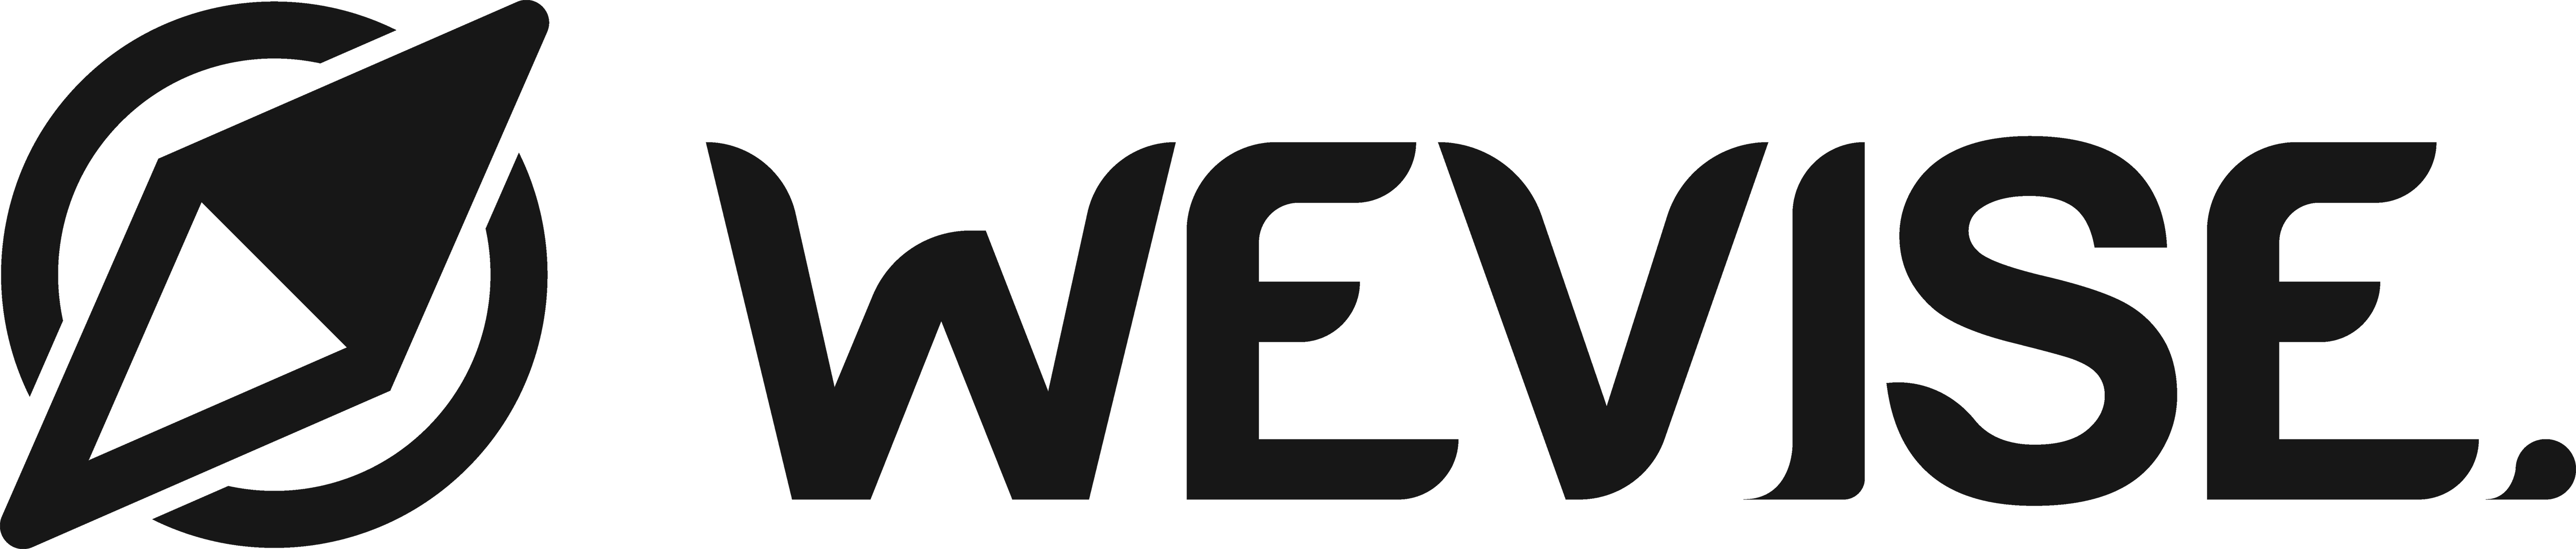 wevise-logo-black-footer3